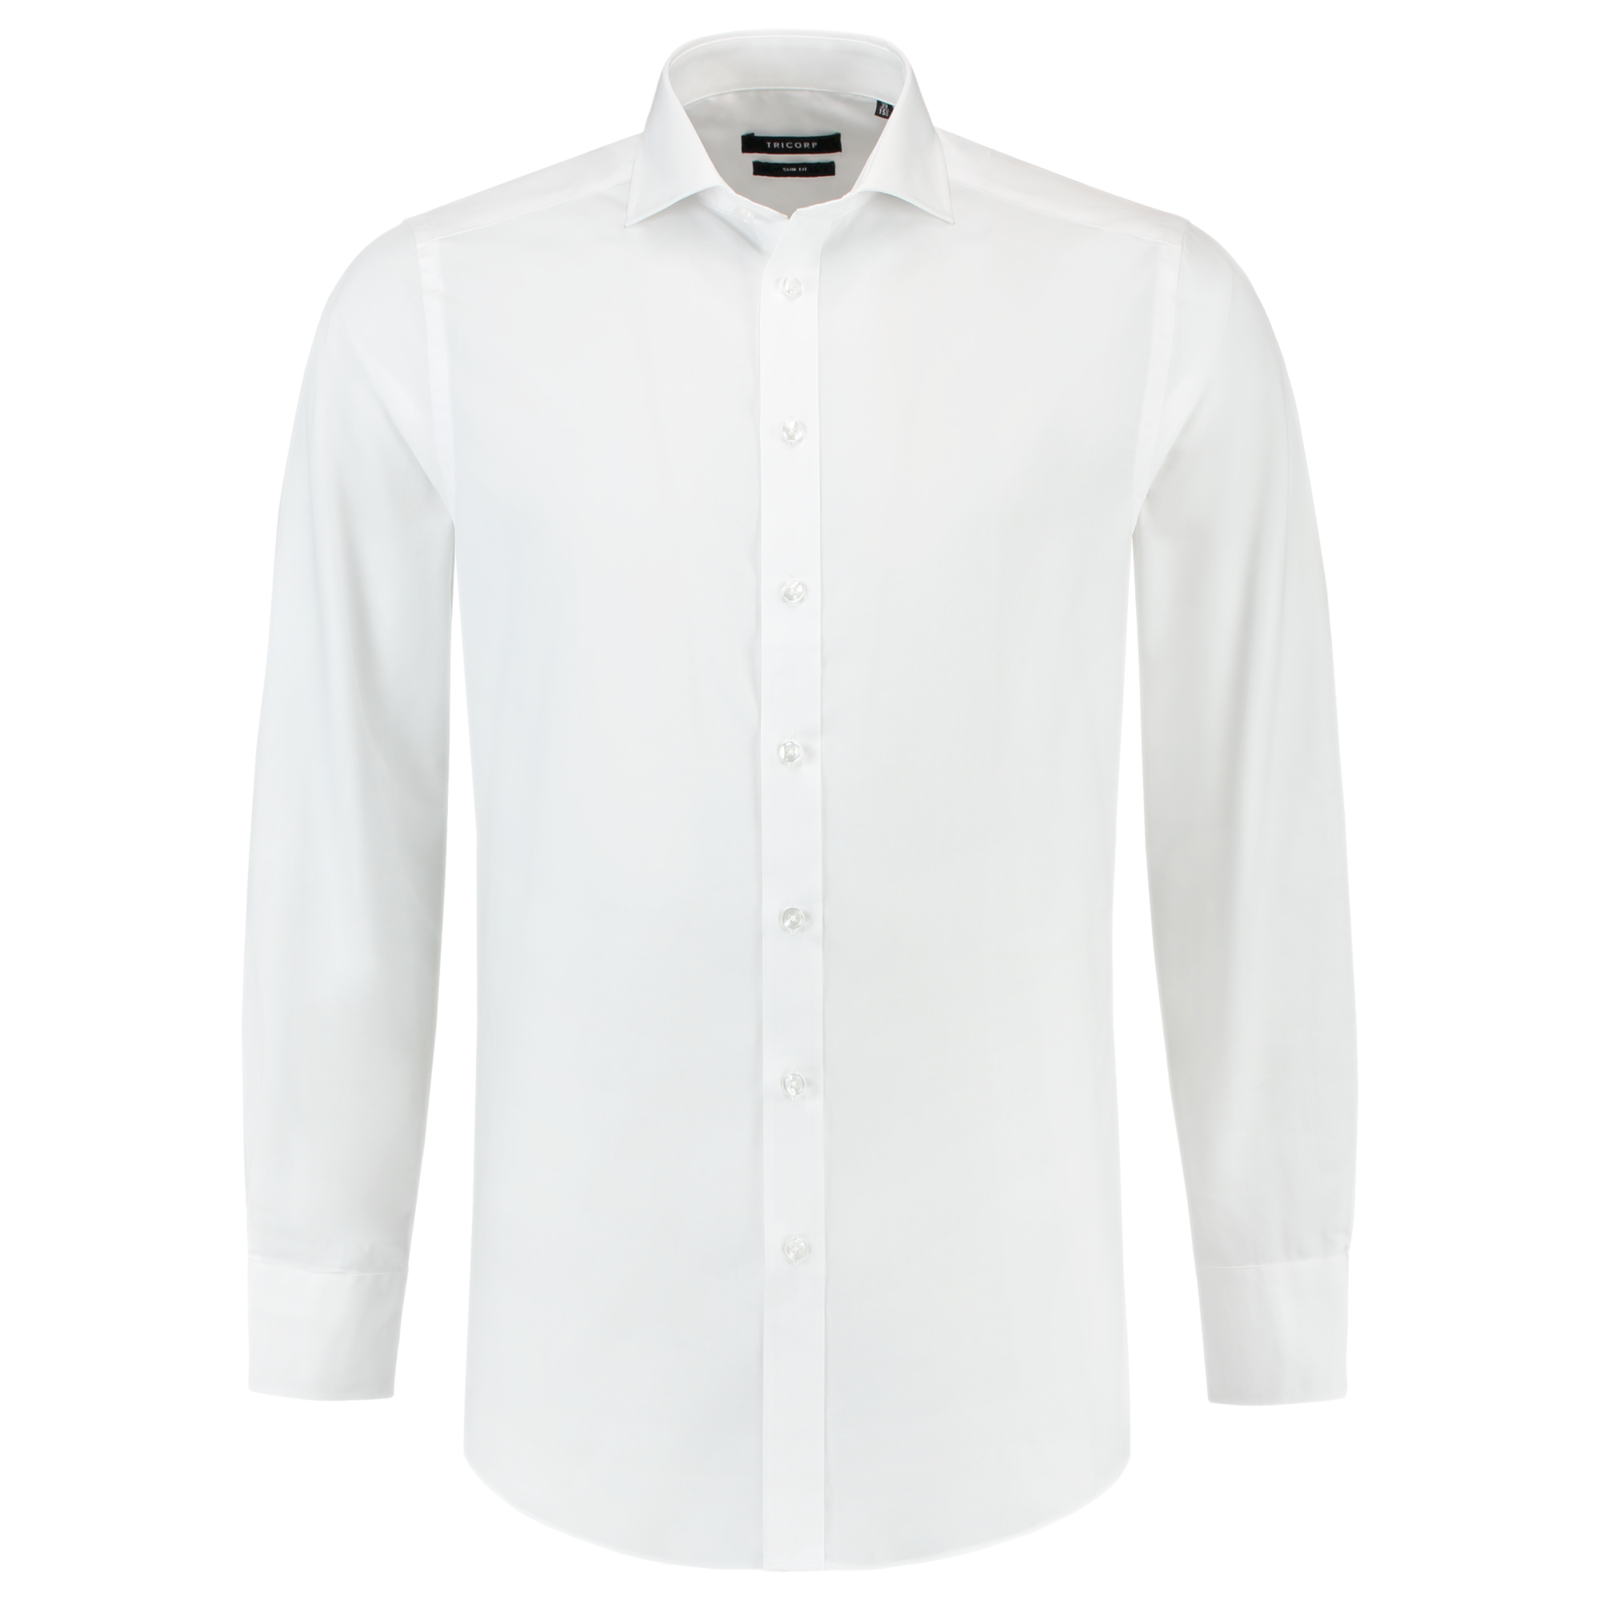 Pánska košeľa s dlhým rukávom Tricorp Fitted Stretch T23 - veľkosť: 44, farba: biela